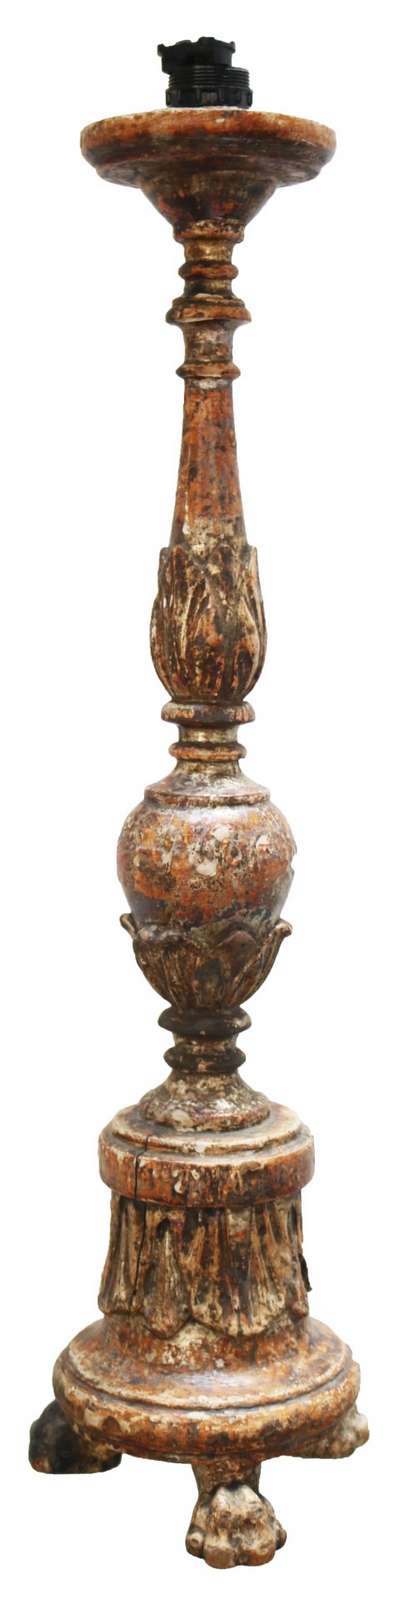 Antico candelabro in legno. Epoca 1700. - 1